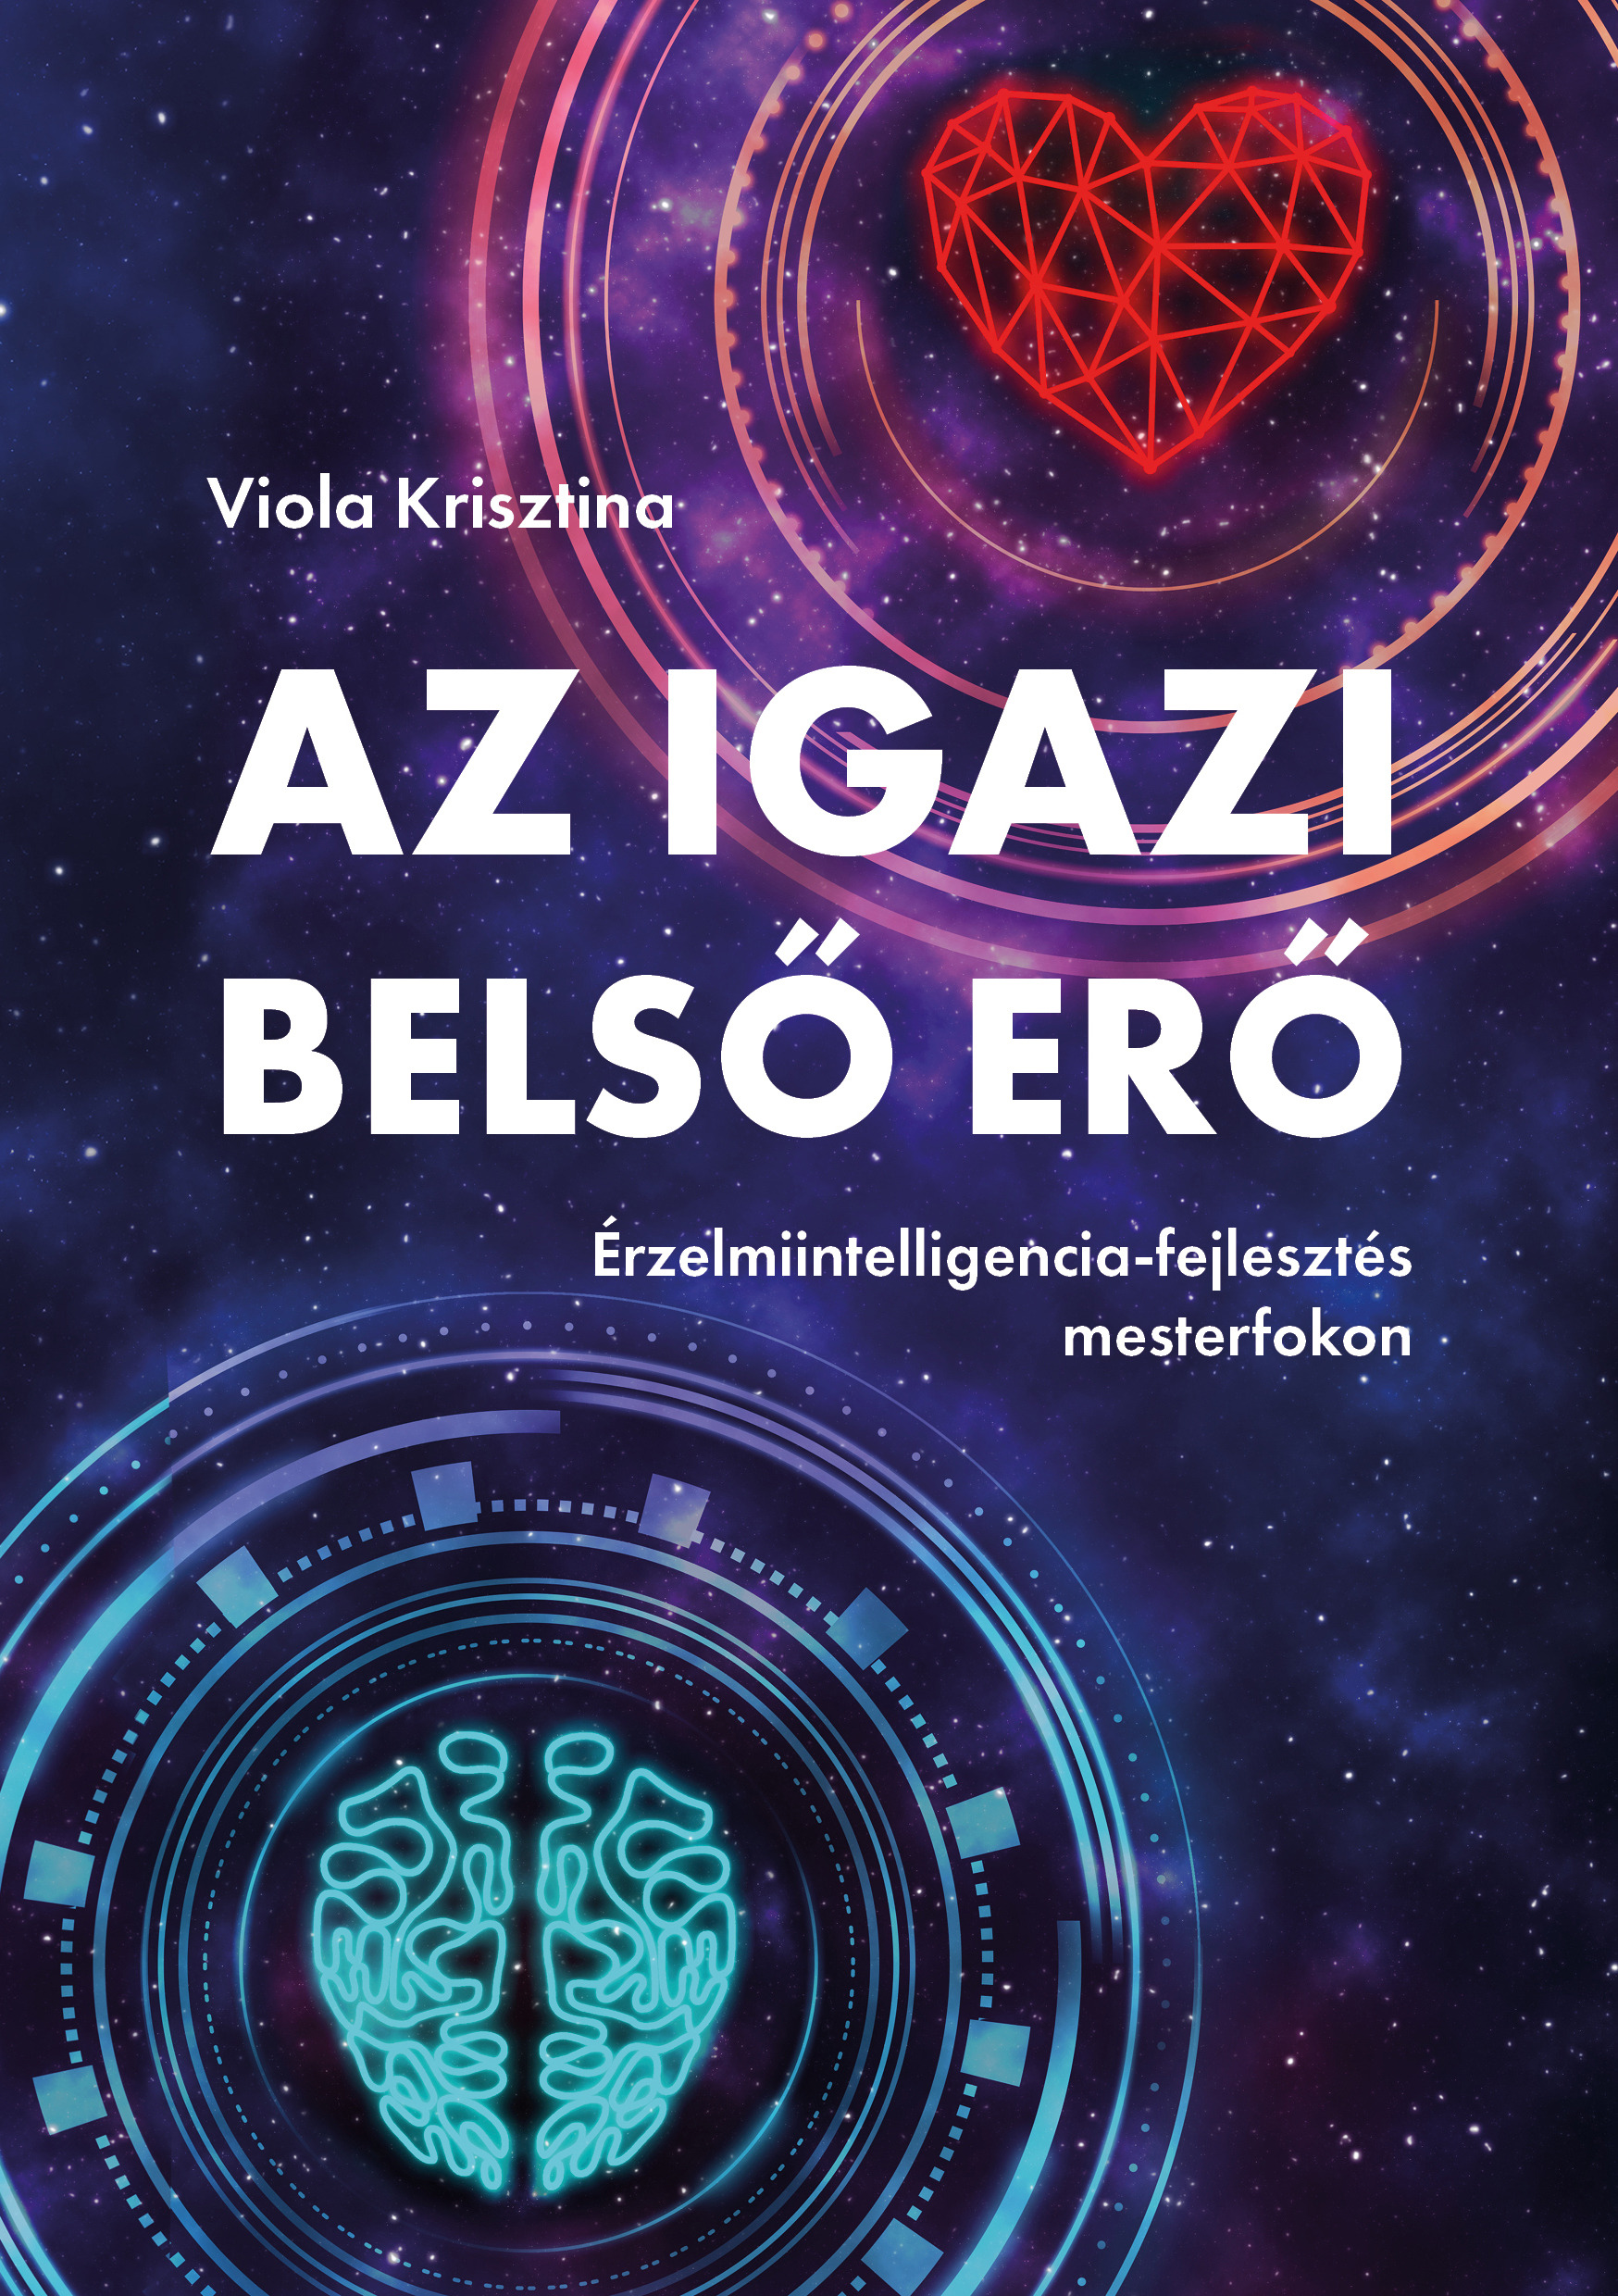 Viola Krisztina - Az igazi belső erő - Érzelmiintelligencia-fejlesztés mesterfokon [eKönyv: epub, mobi, pdf]